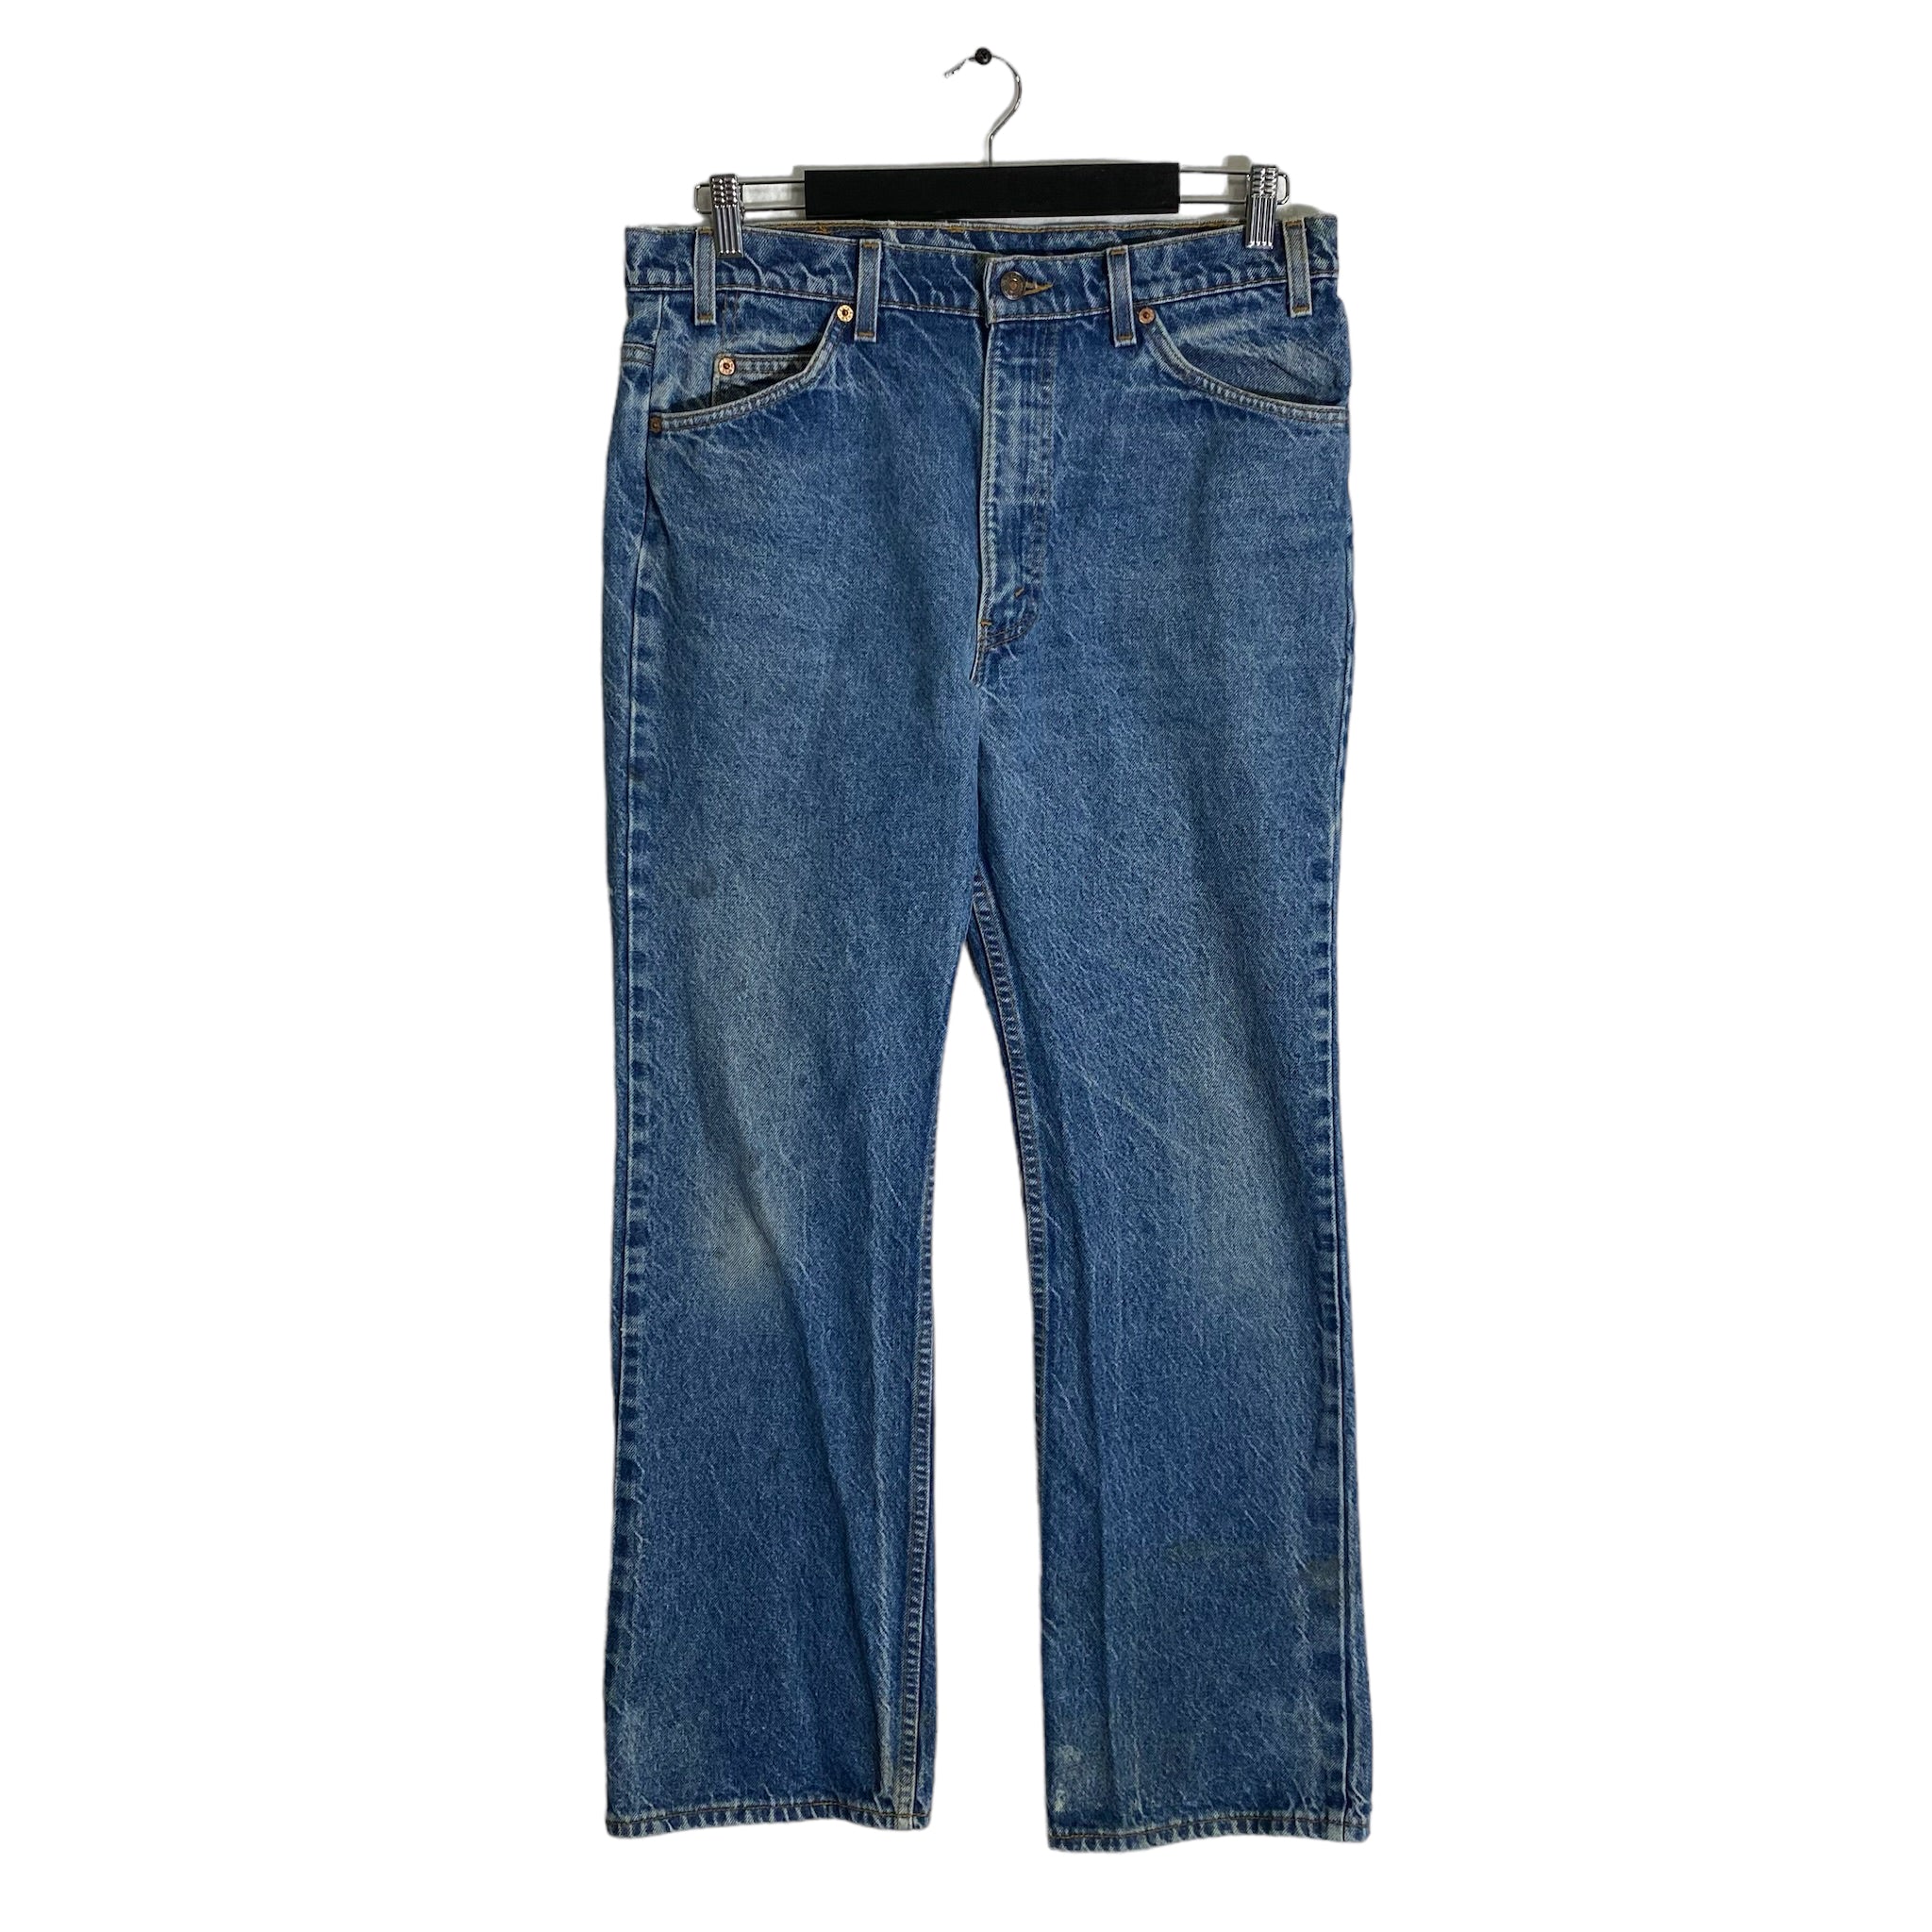 Vintage Levi’s 517 Orange Tab Jeans